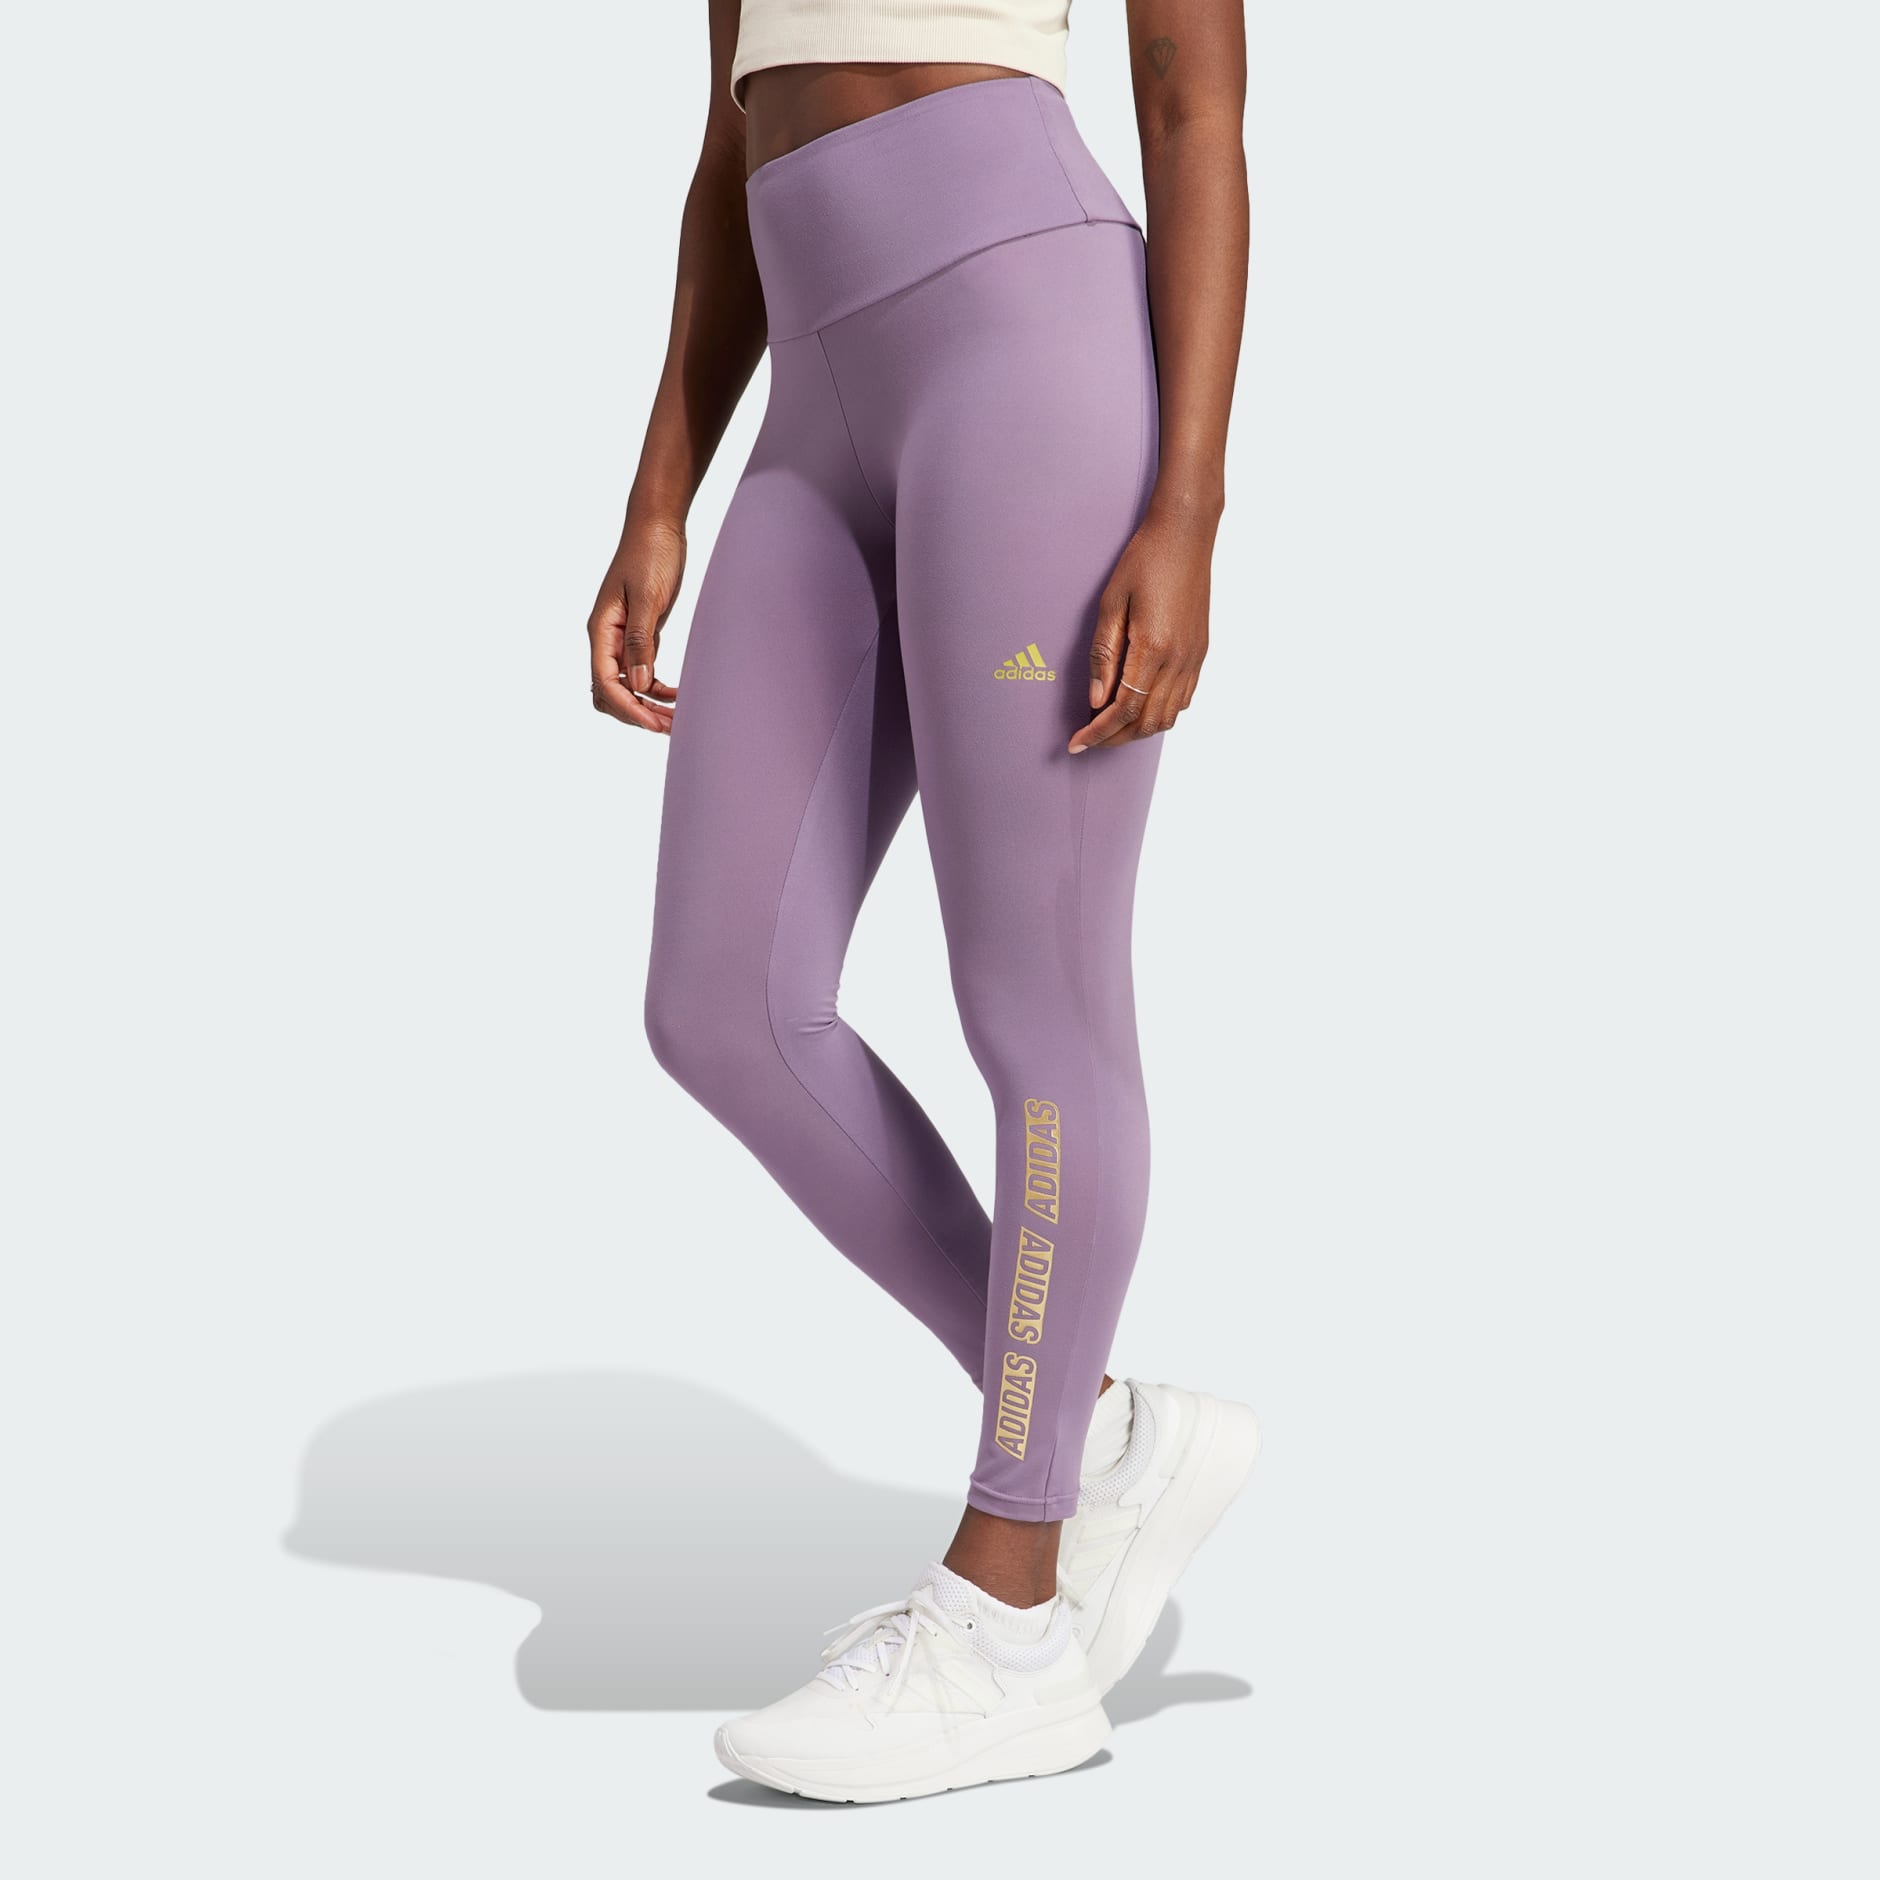 Clothing - Yoga Essentials 7/8 Leggings - Purple